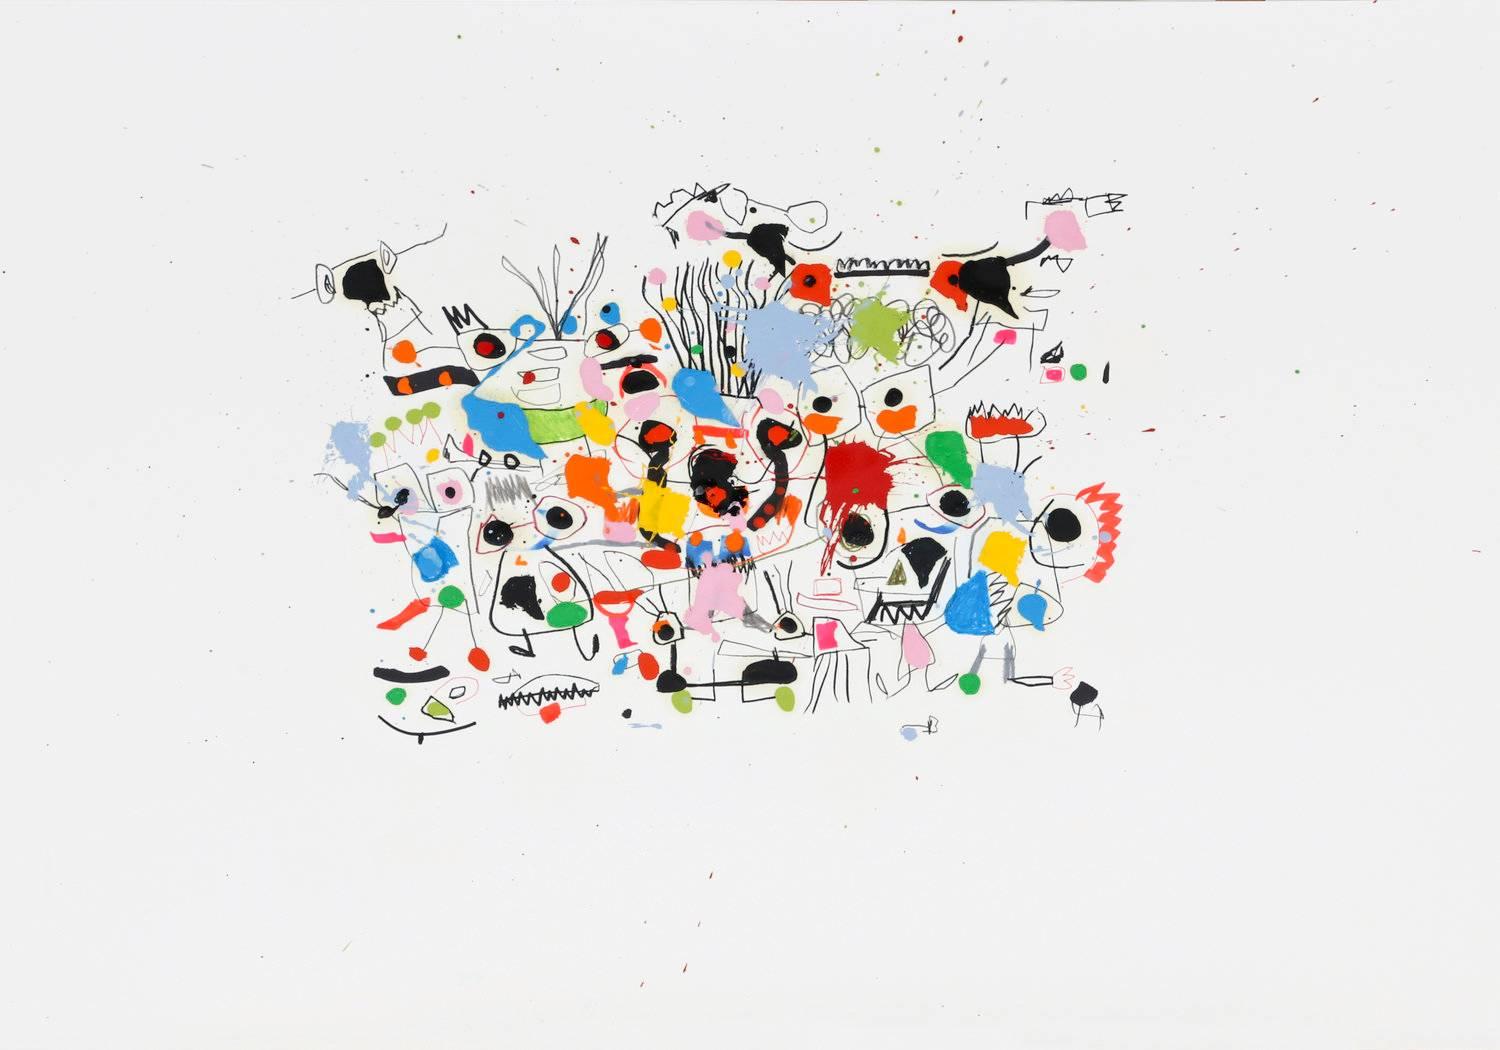 Der 1971 geborene spanische Künstler Xavi Carbonell malt als Erwachsener aktiv wie ein Kind und lässt alle seine Werke "ohne Titel", damit jeder Betrachter seine eigene Geschichte erfinden kann.  Das Ergebnis ist ein unterhaltsames, frisches und